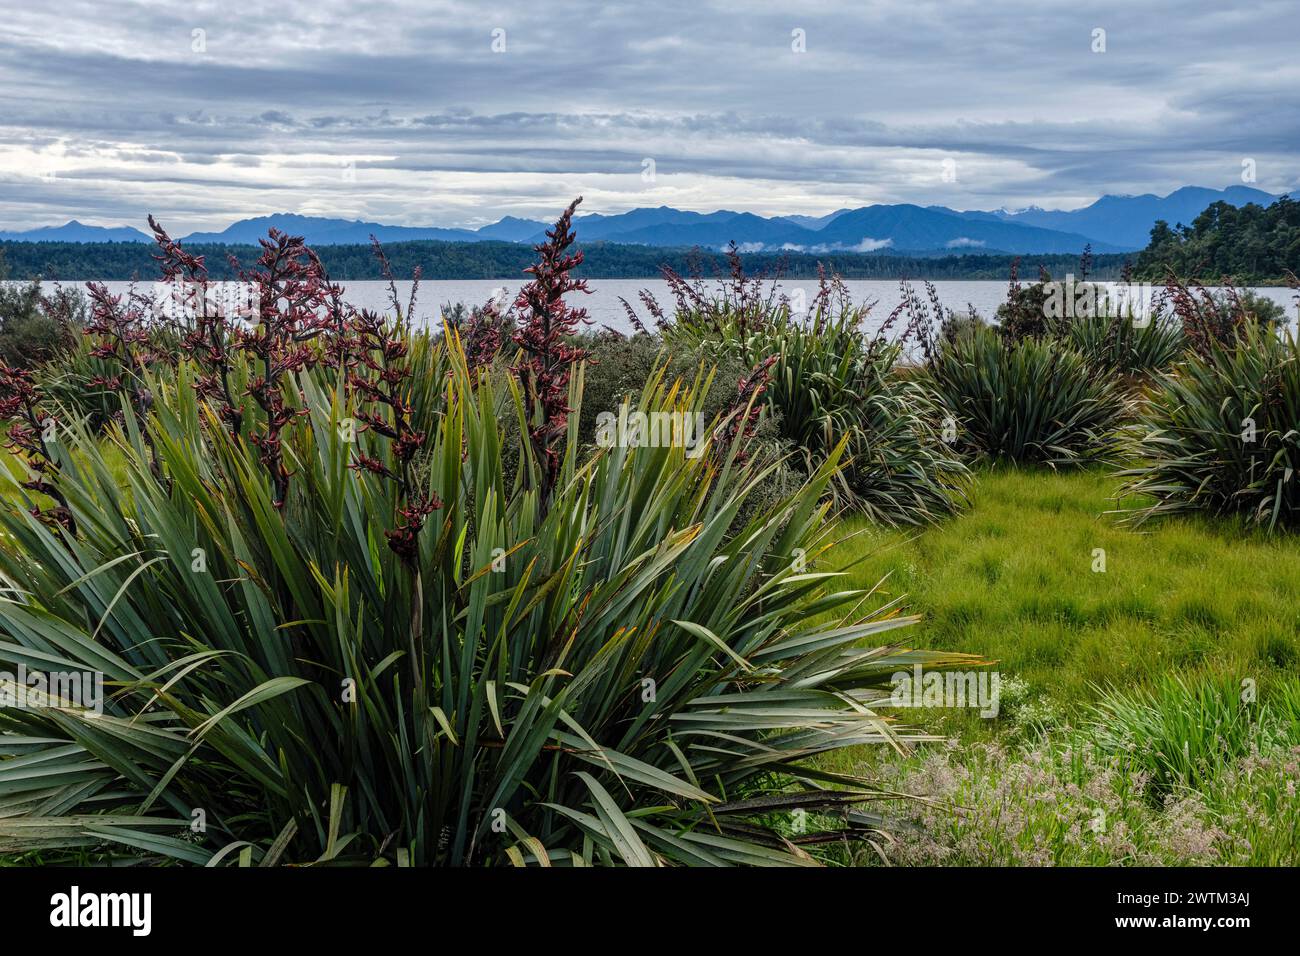 Lino neozelandese (Phormium tenax) che cresce accanto al lago Mahinapua nella regione della costa occidentale dell'Isola del Sud della nuova Zelanda Foto Stock